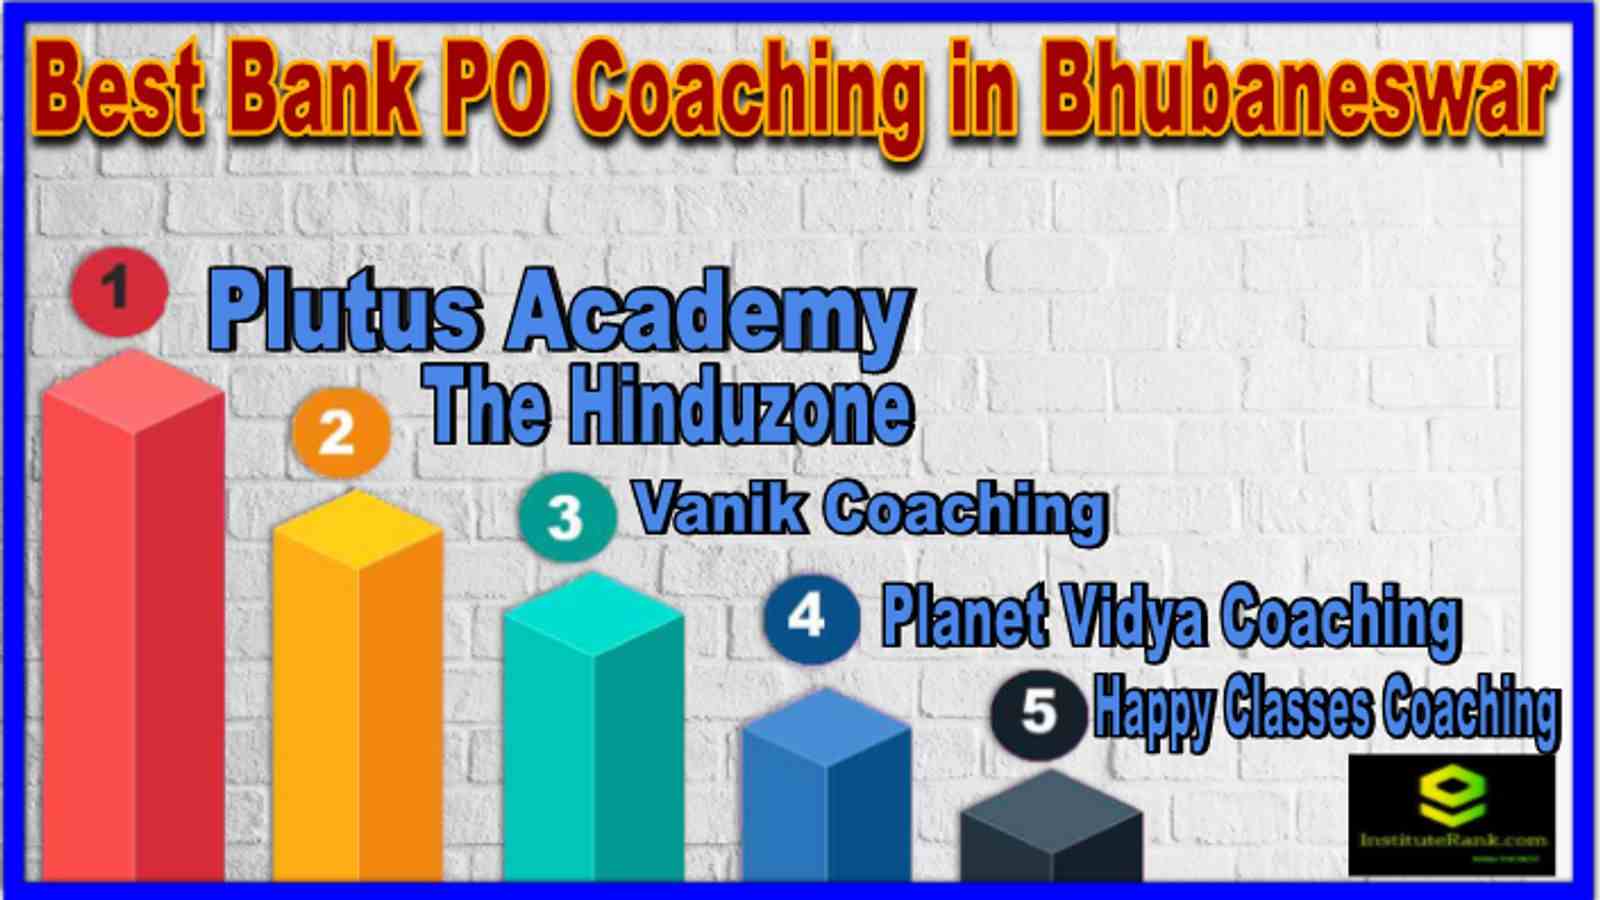 Best Banking PO Coaching in Bhubaneswar